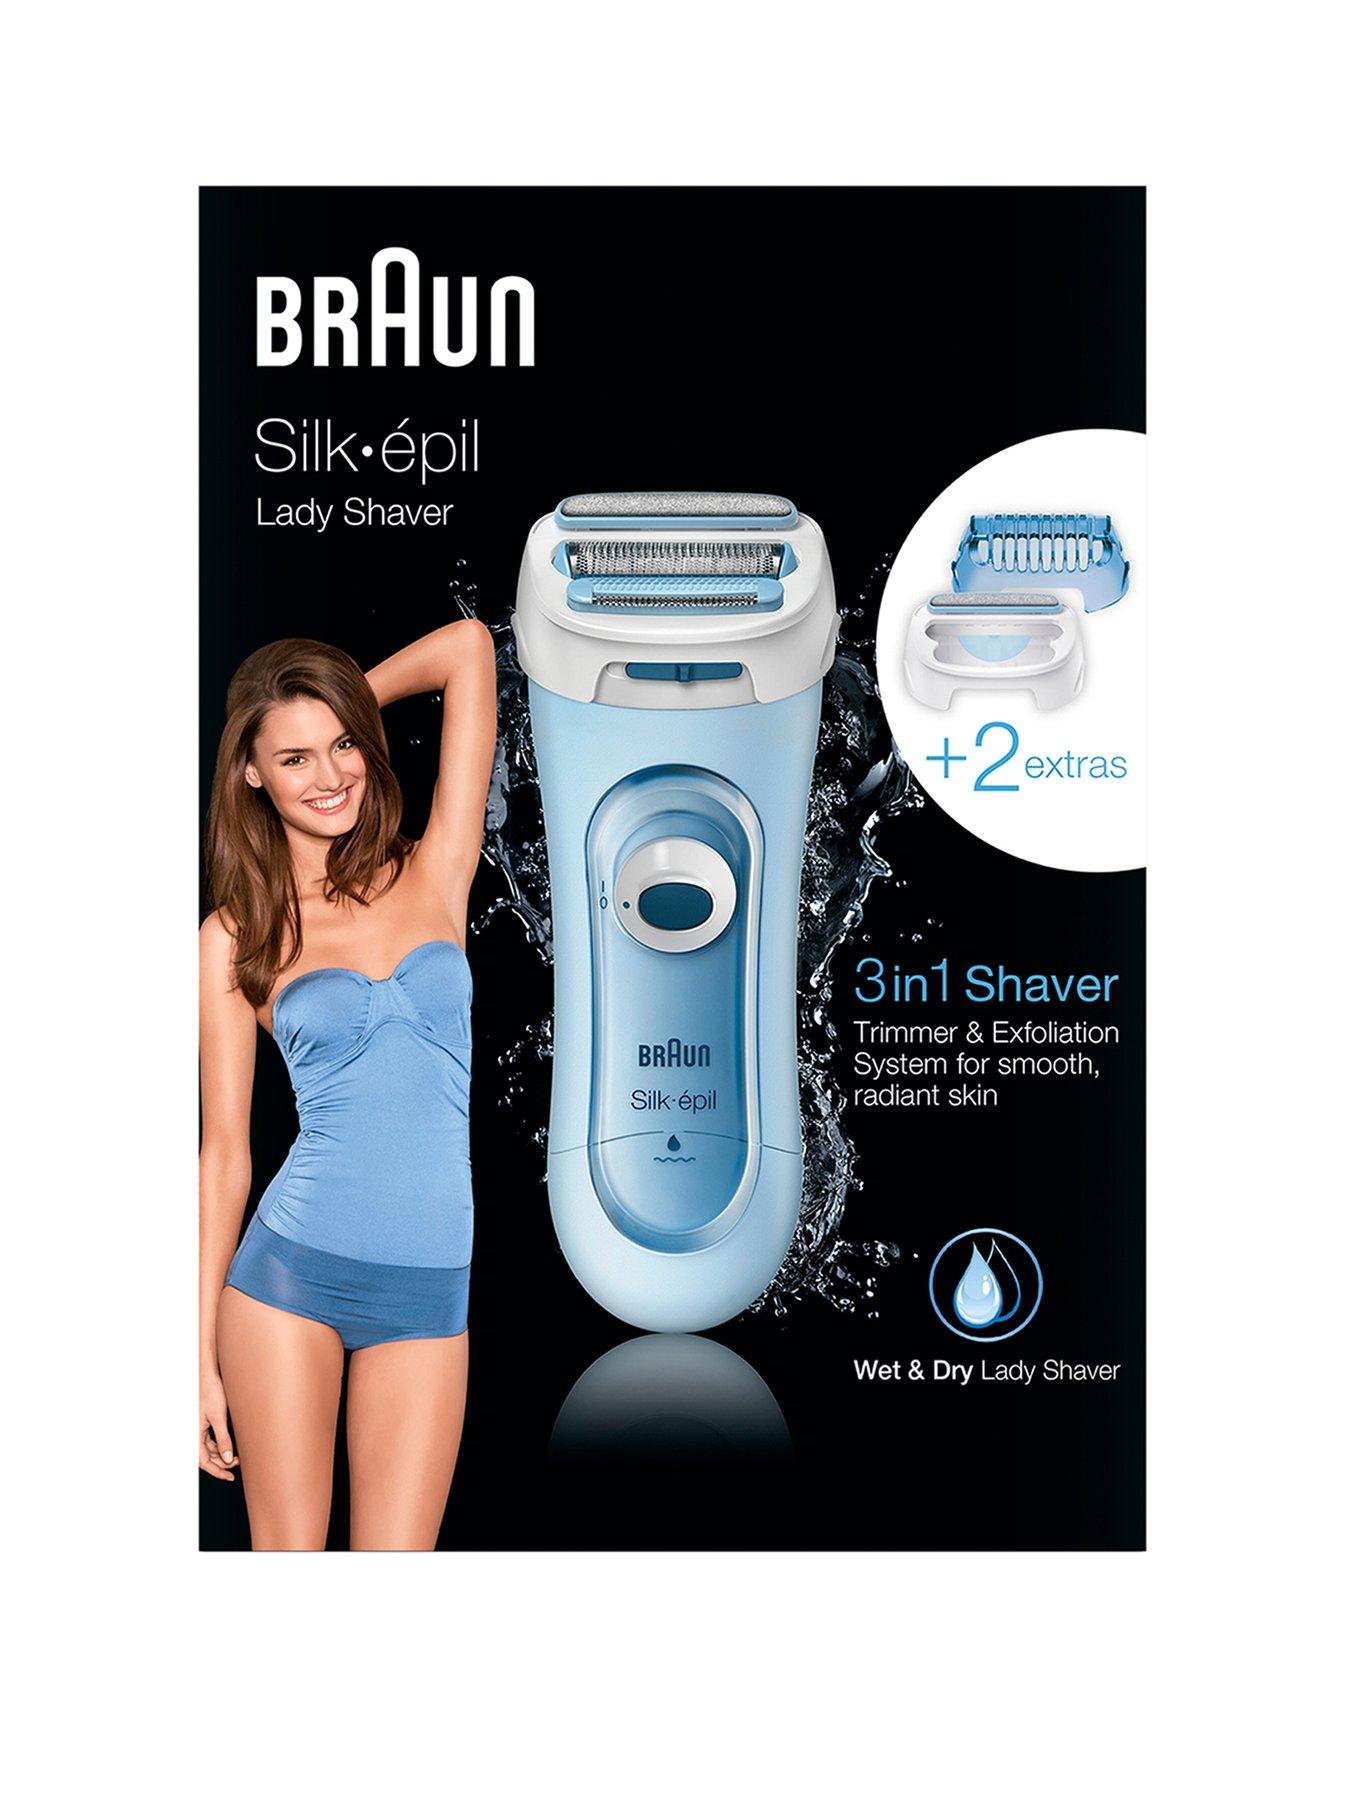 Braun Silk-épil 9 9-855 Epilator for Women for Long-Lasting Hair